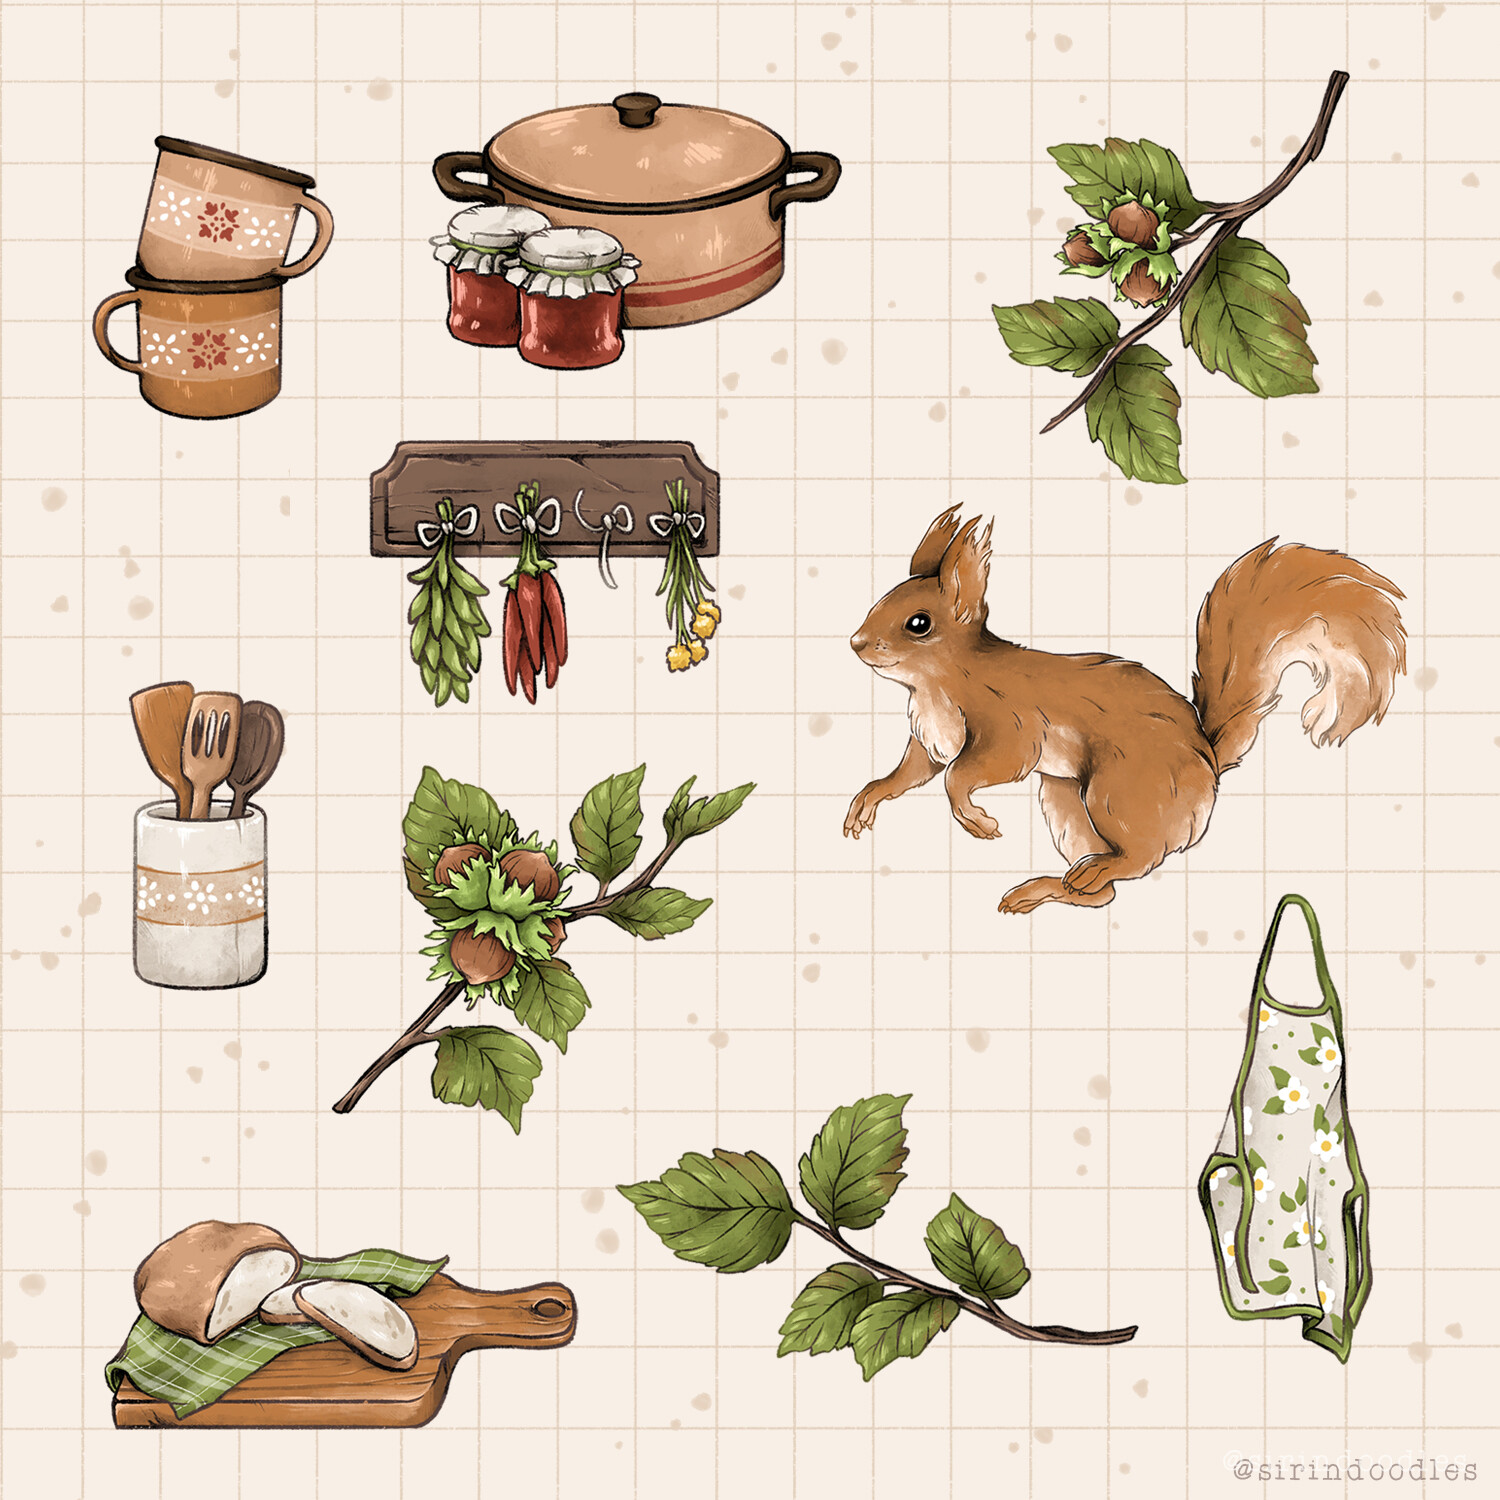 ArtStation - Cottage props illustration - Goat and cottage core journal  sticker set